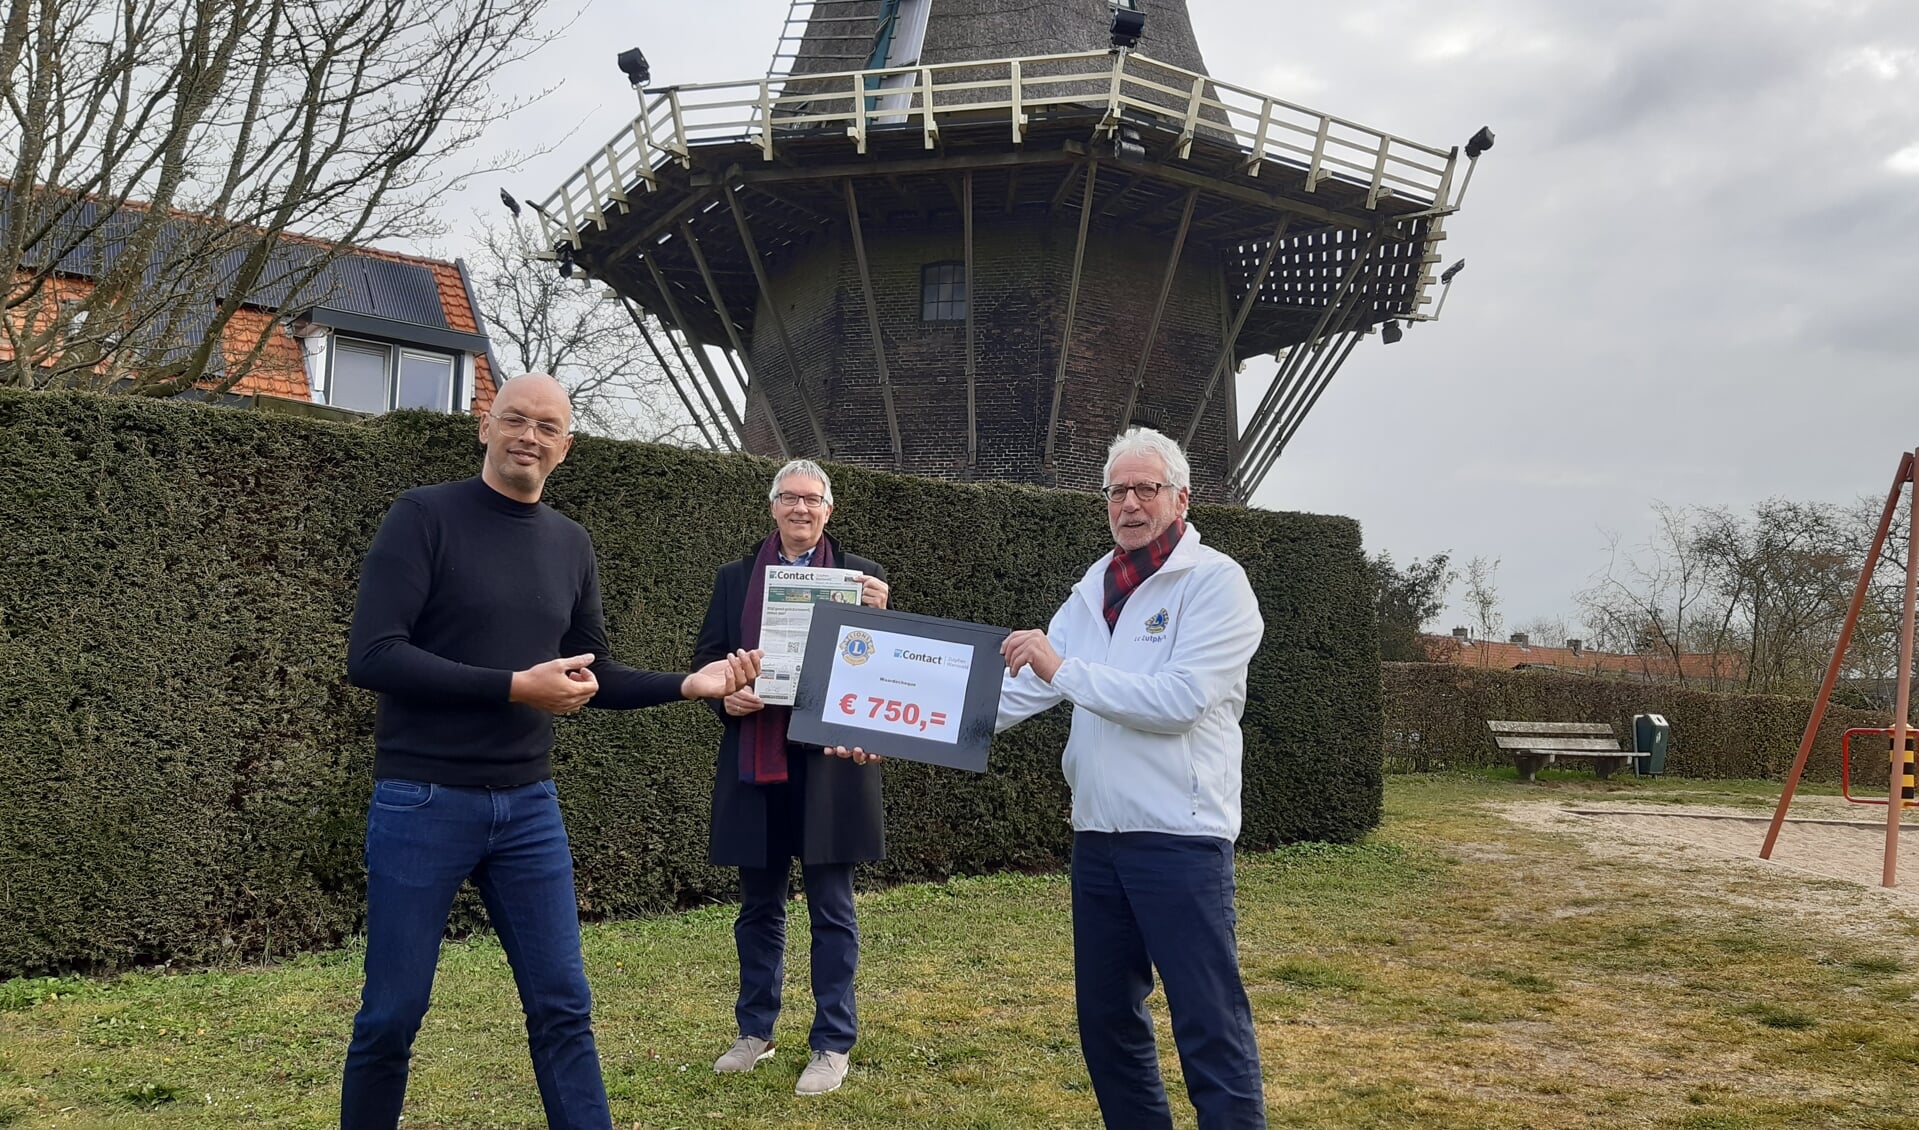 Rick Lesnussa (l) van weekblad Contact neemt de waarde cheque van 750 euro in ontvangst van Lionspresident Paul van Haandel (rechts) en Henk Derksen. Foto: PR